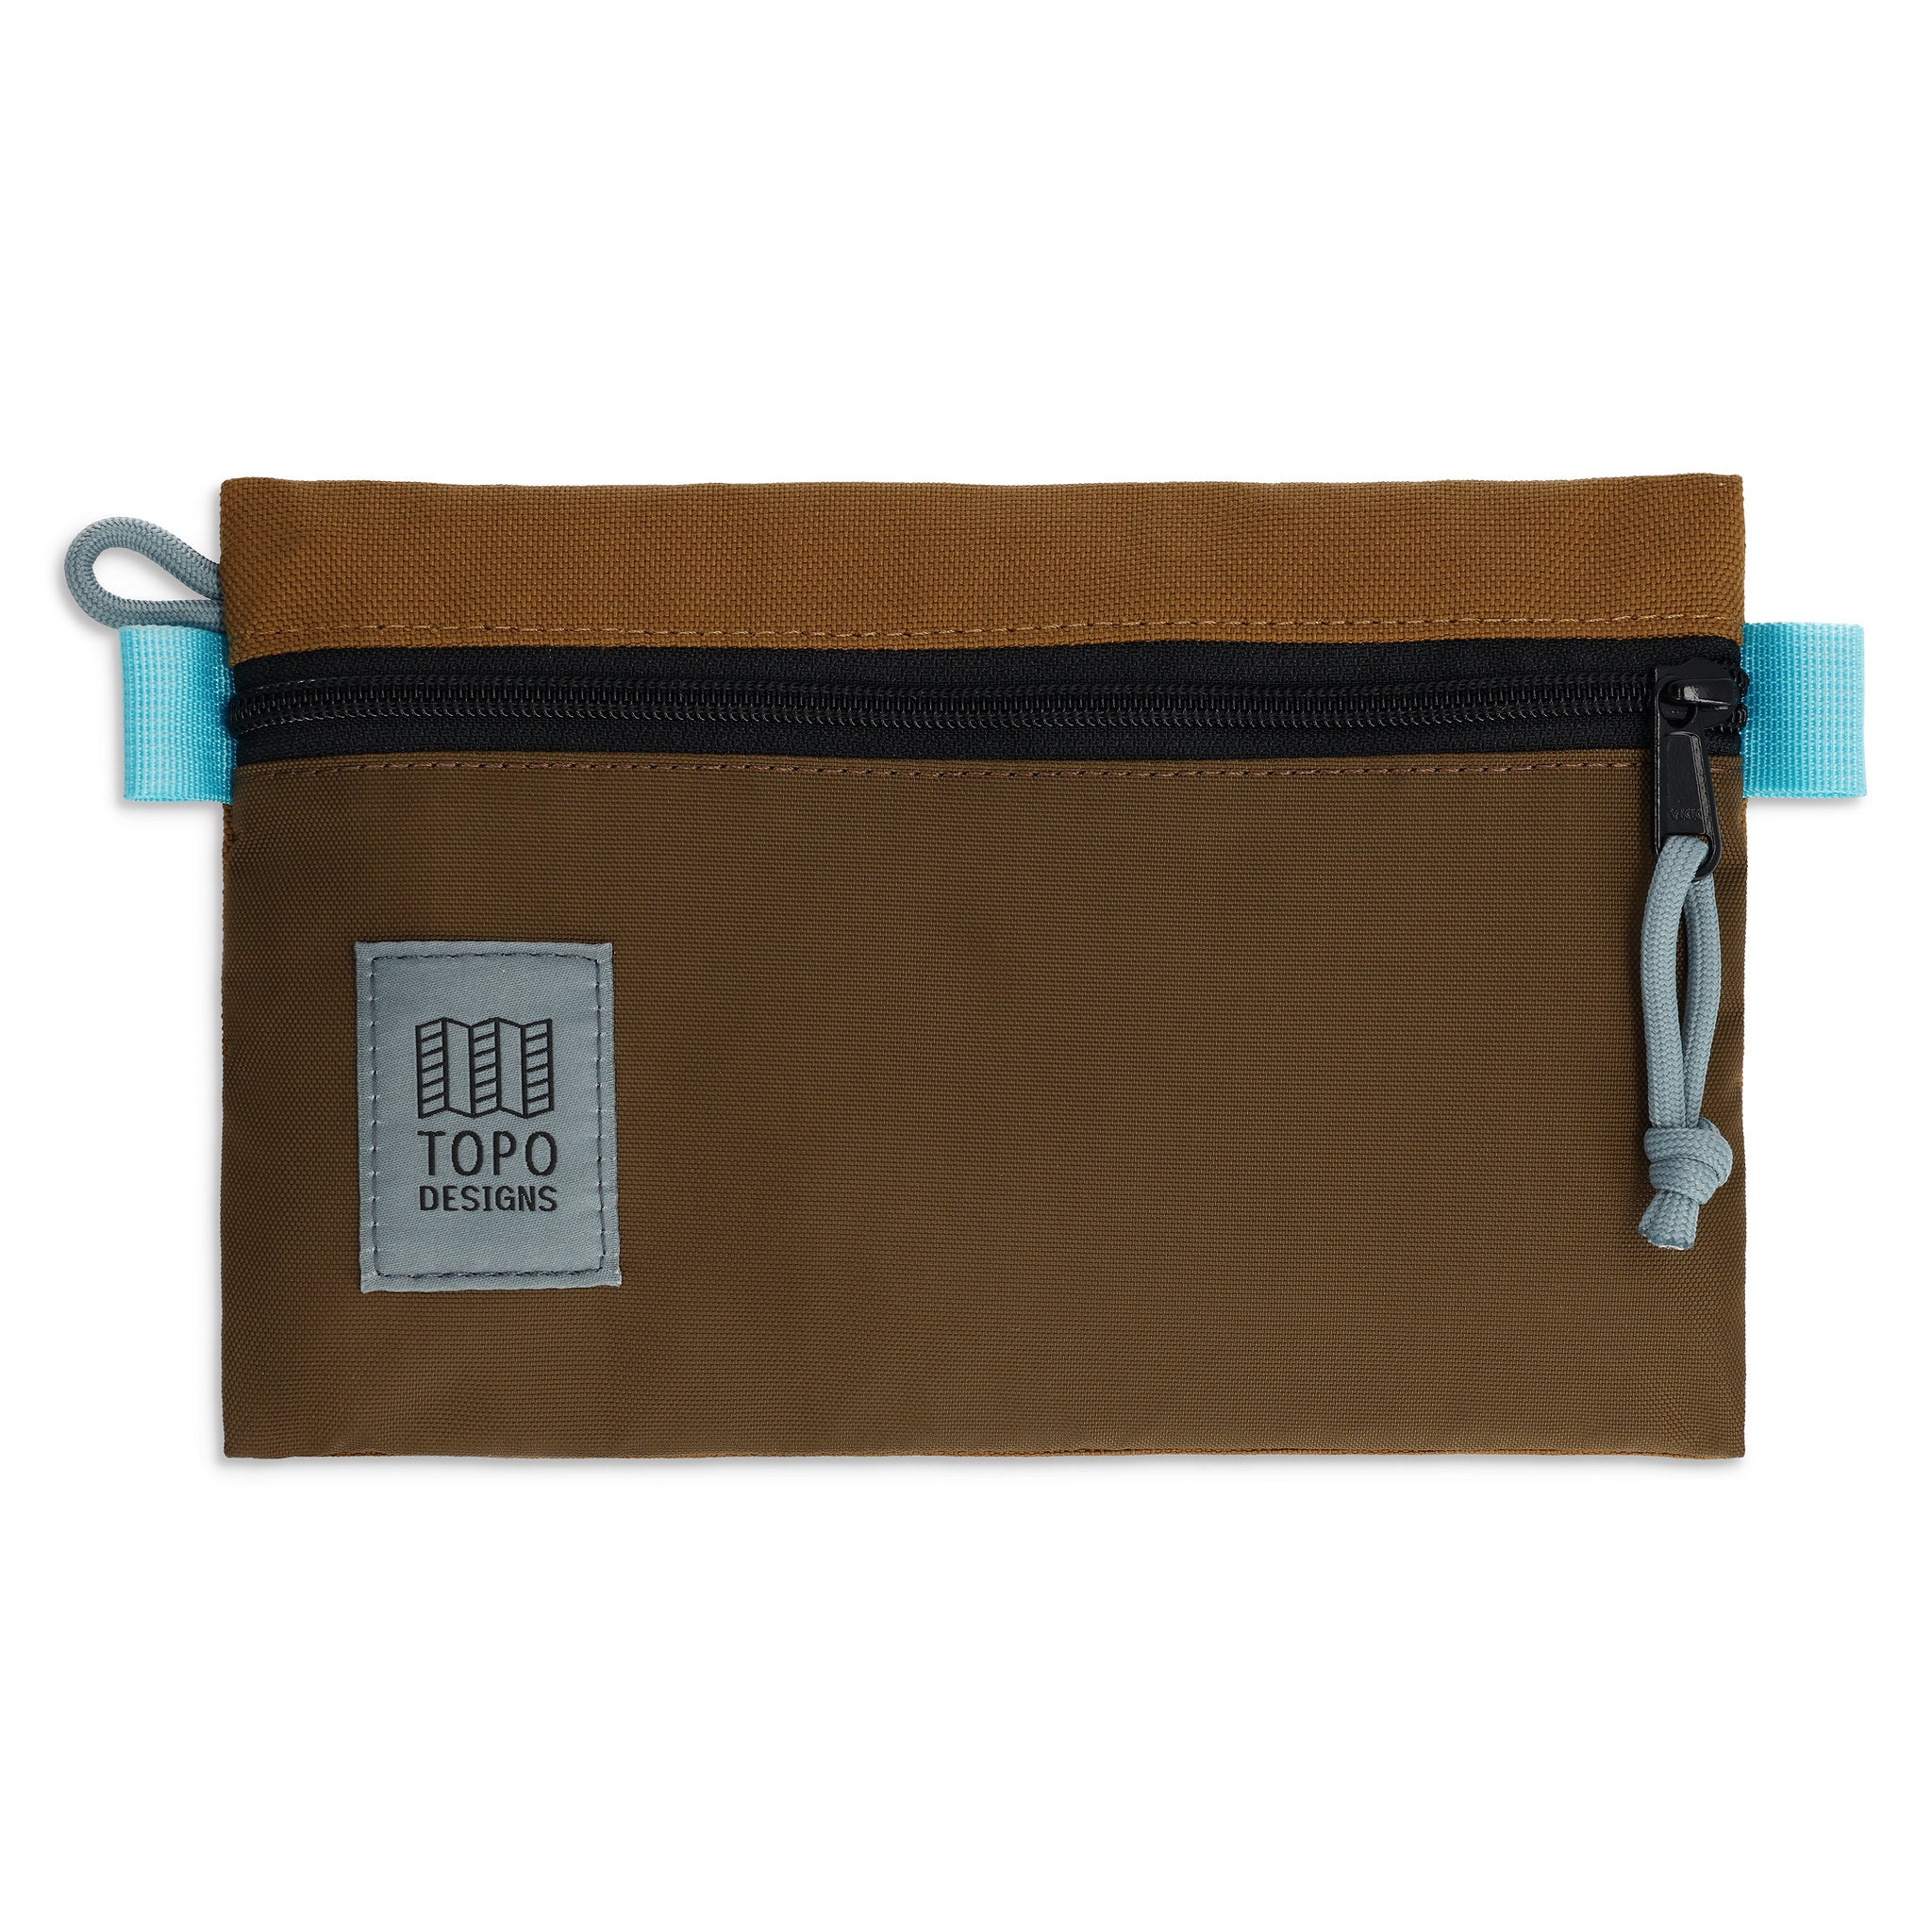 Accessory Bag Small Topo Designs